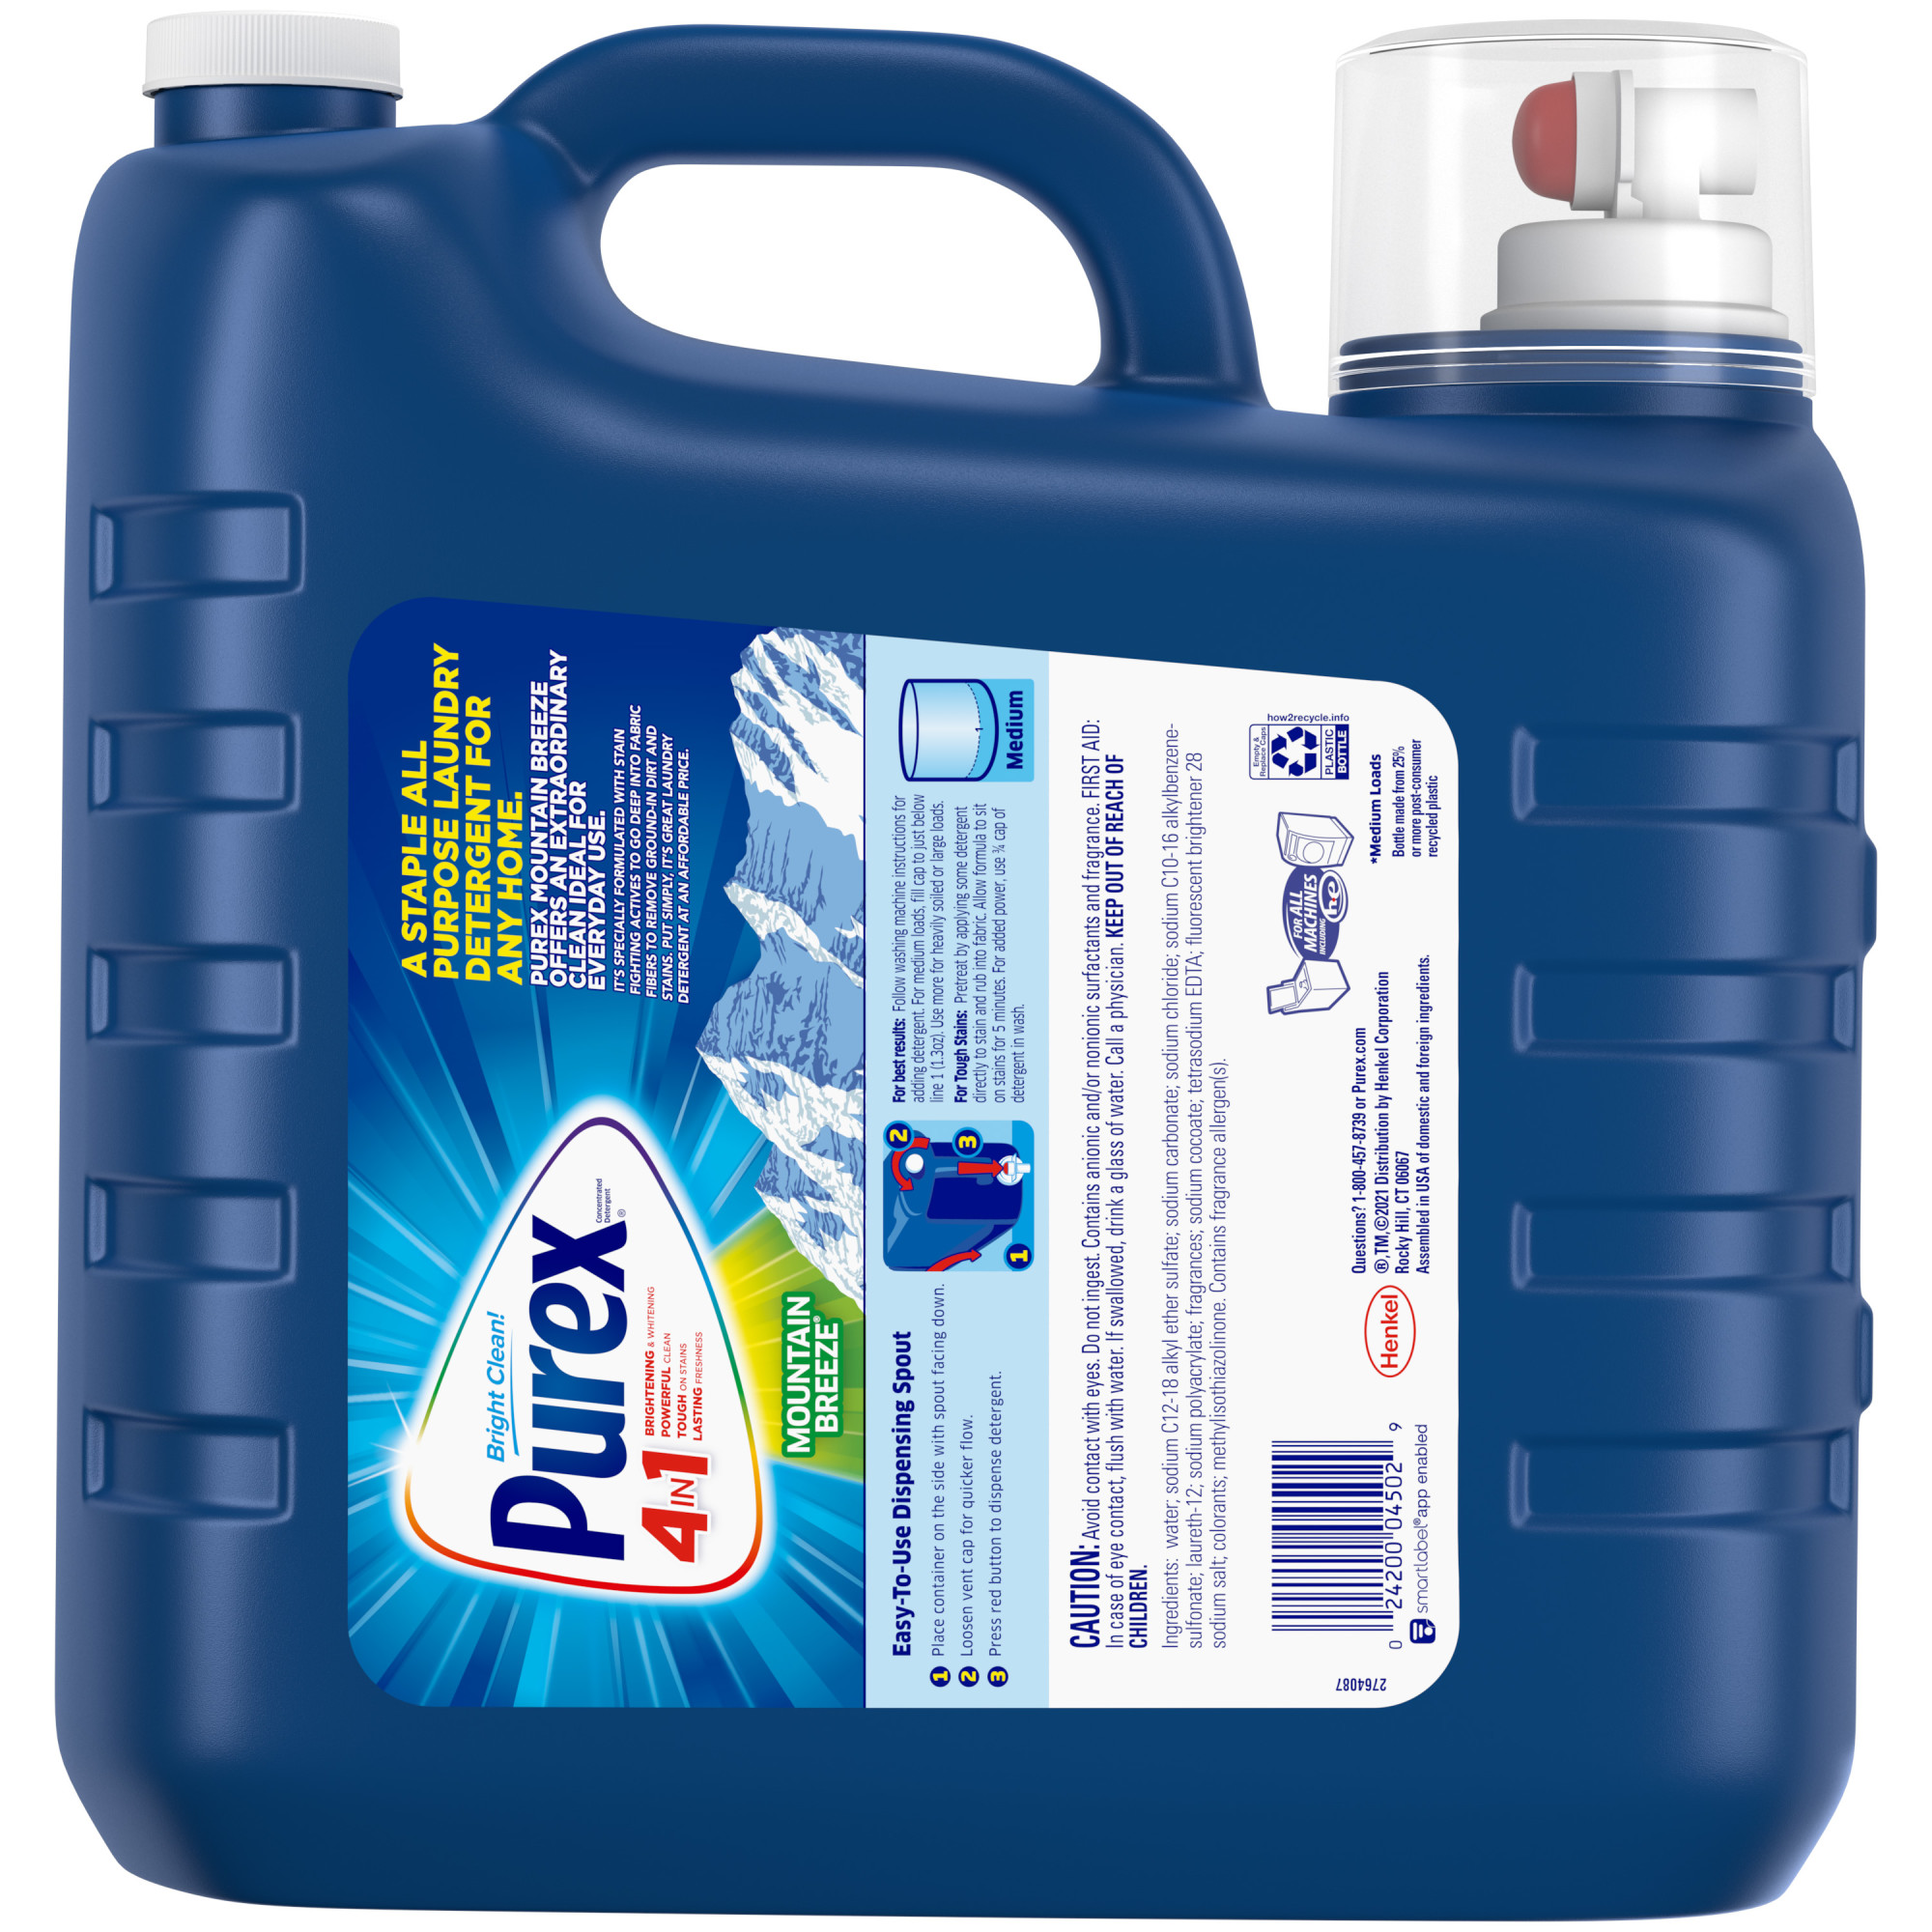 Purex Liquid Laundry Detergent, Mountain Breeze, 312 Fluid Ounces, 240 Loads - image 3 of 7